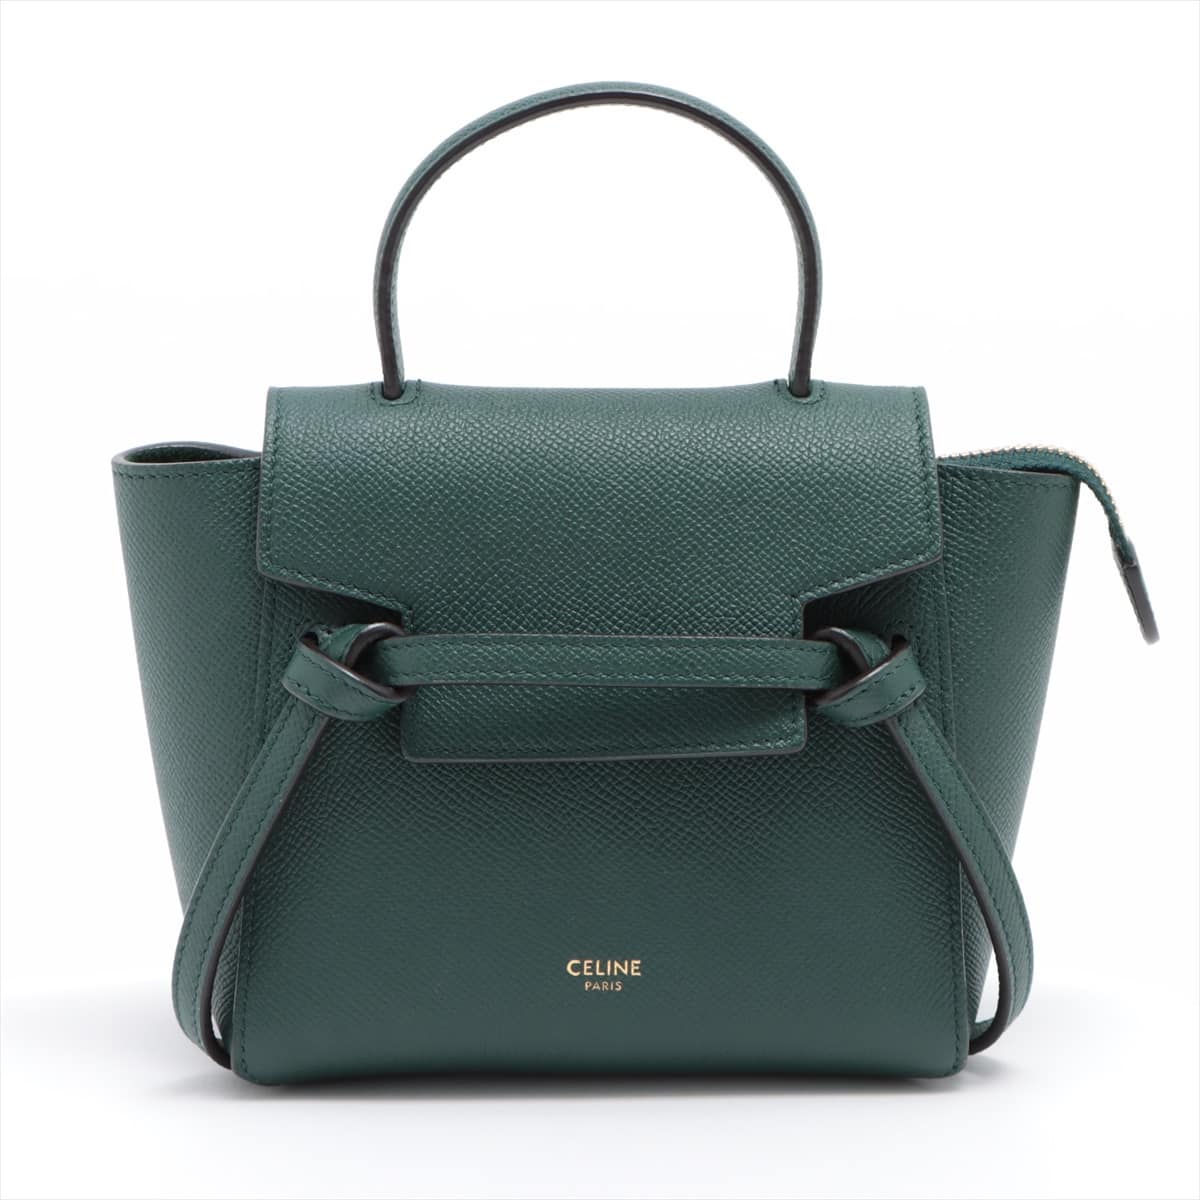 CELINE Belt Bag Pico Leather 2way shoulder bag Green